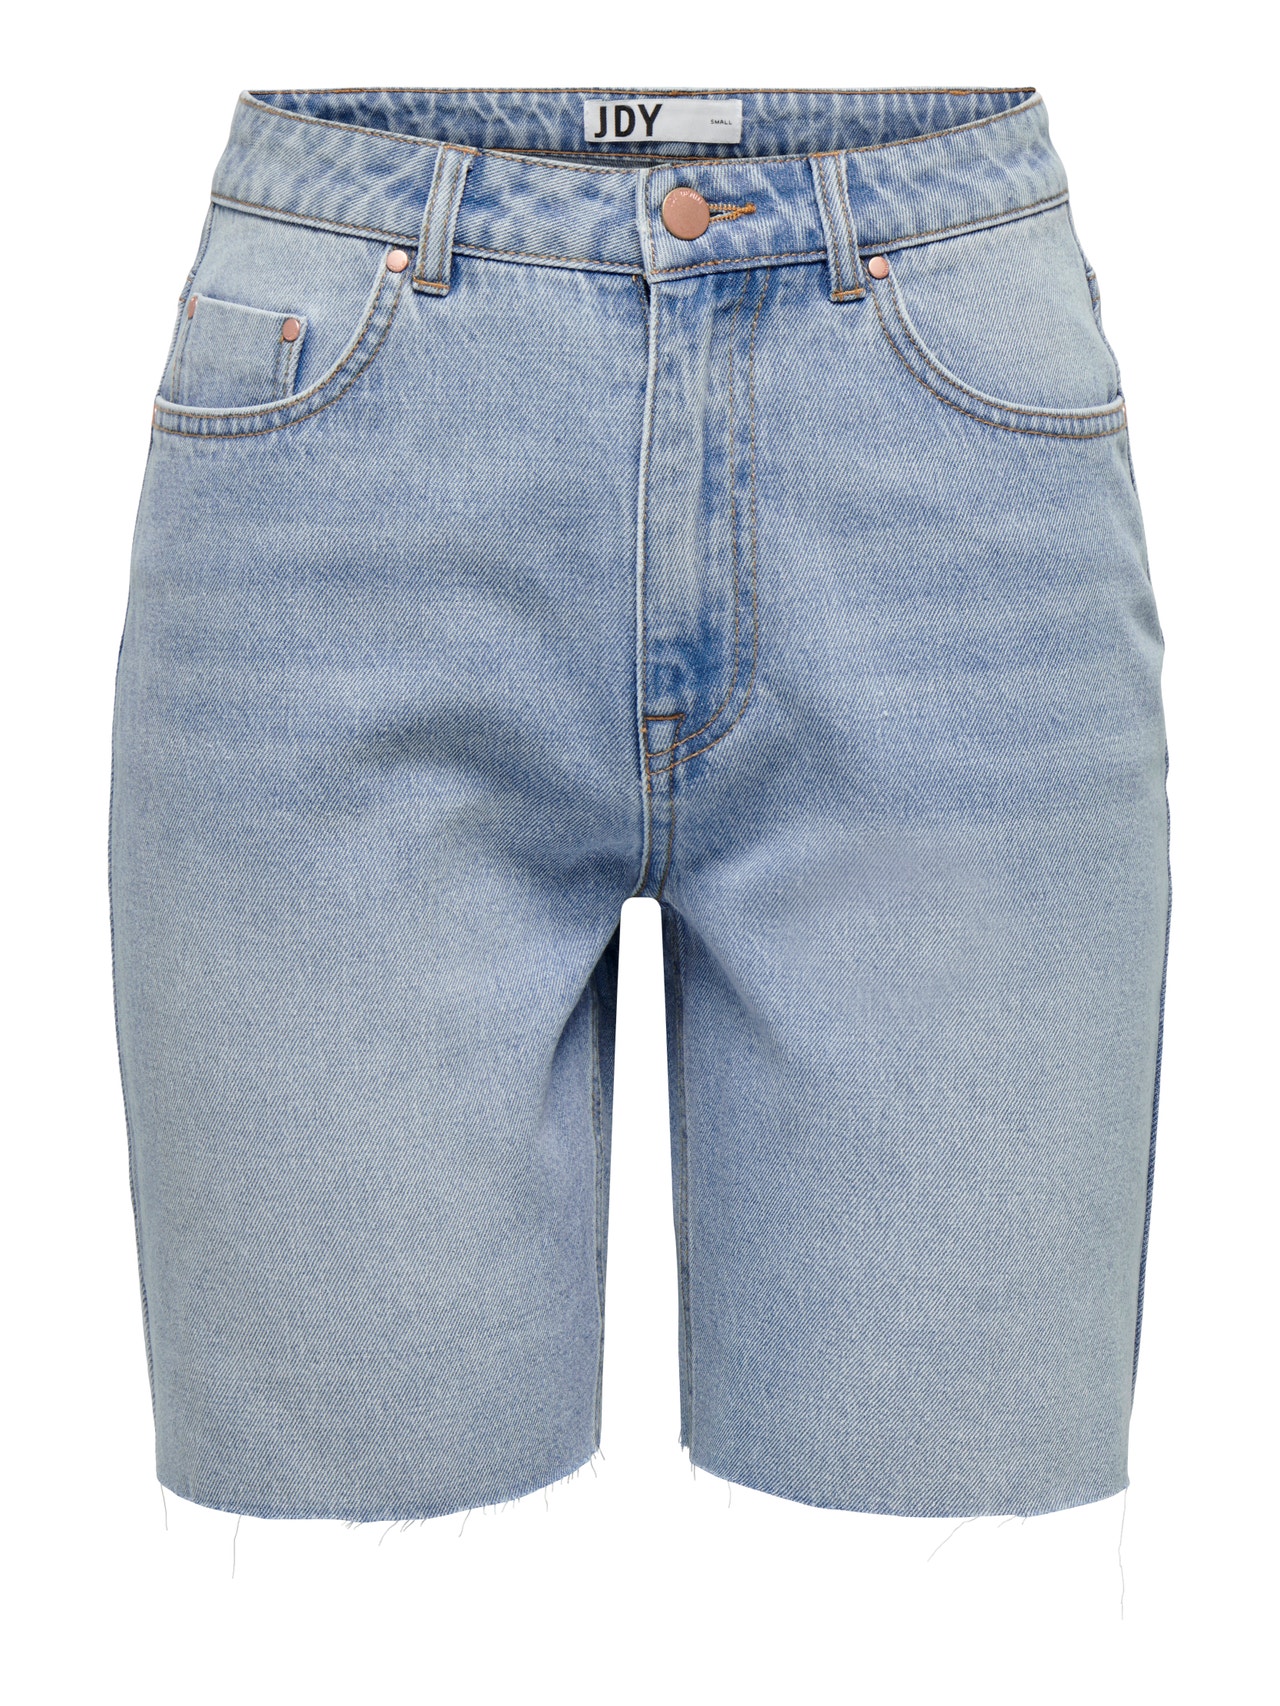 ONLY Loose Fit High waist Raw hems Shorts -Light Blue Denim - 15295540